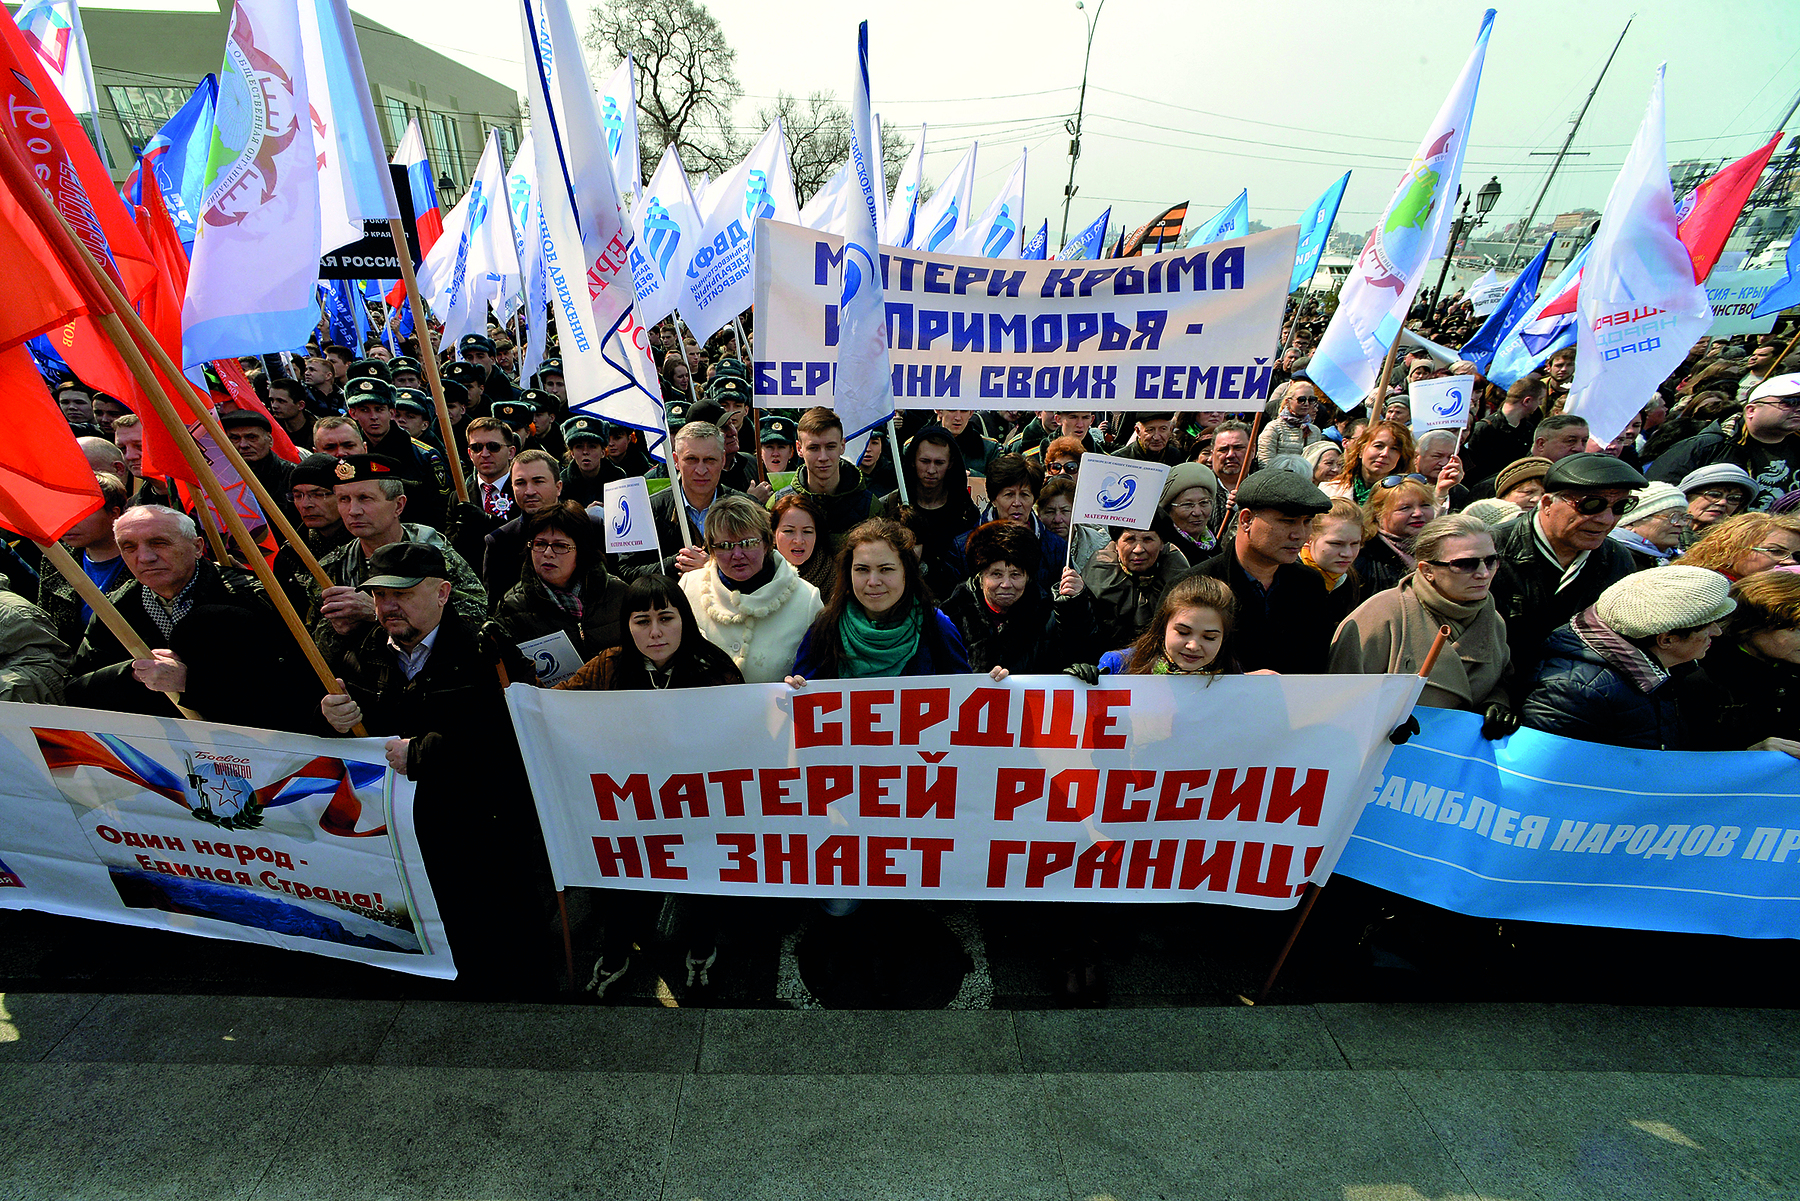 Fotografia. Manifestação de rua com multidão de pessoas em pé, segurando bandeiras, cartazes e faixas com textos no idioma estrangeiro.